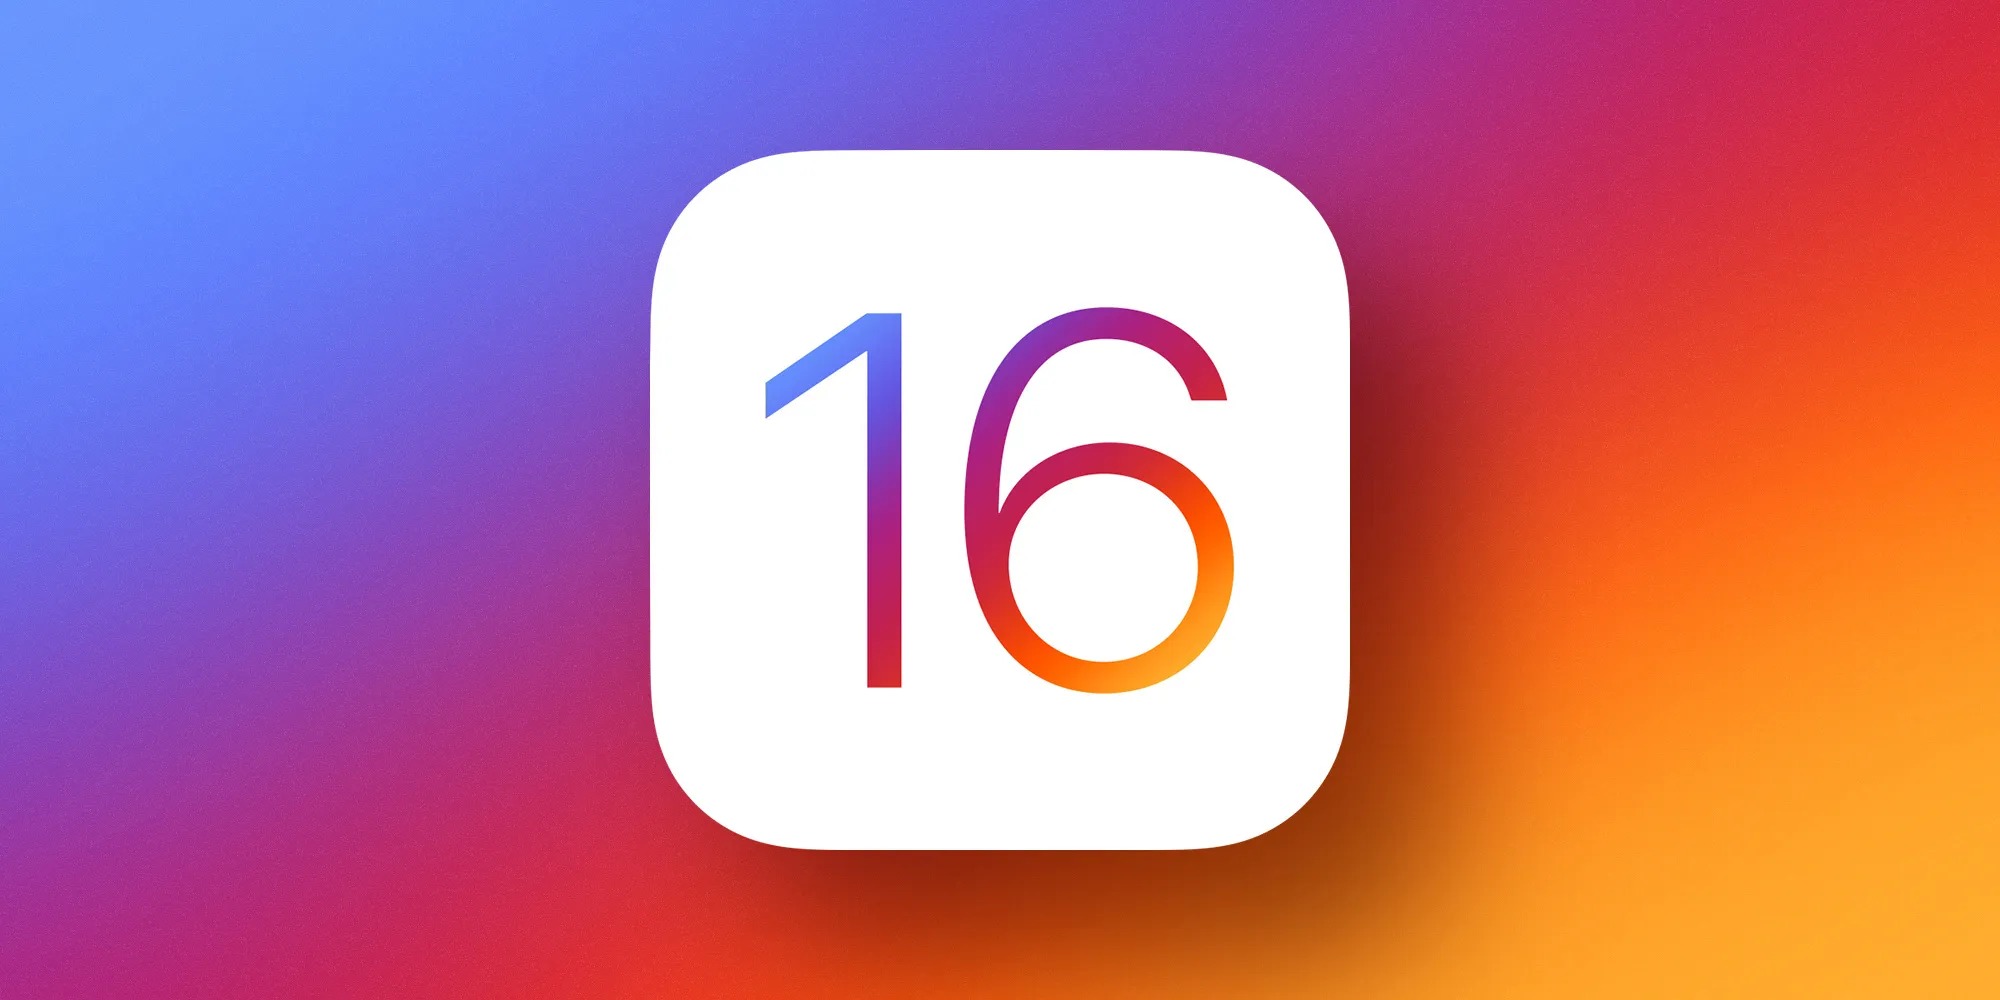 iOS 16 và watchOS 9 hứa hẹn sẽ có nhiều nâng cấp lớn tại WWDC 2022 sắp tới